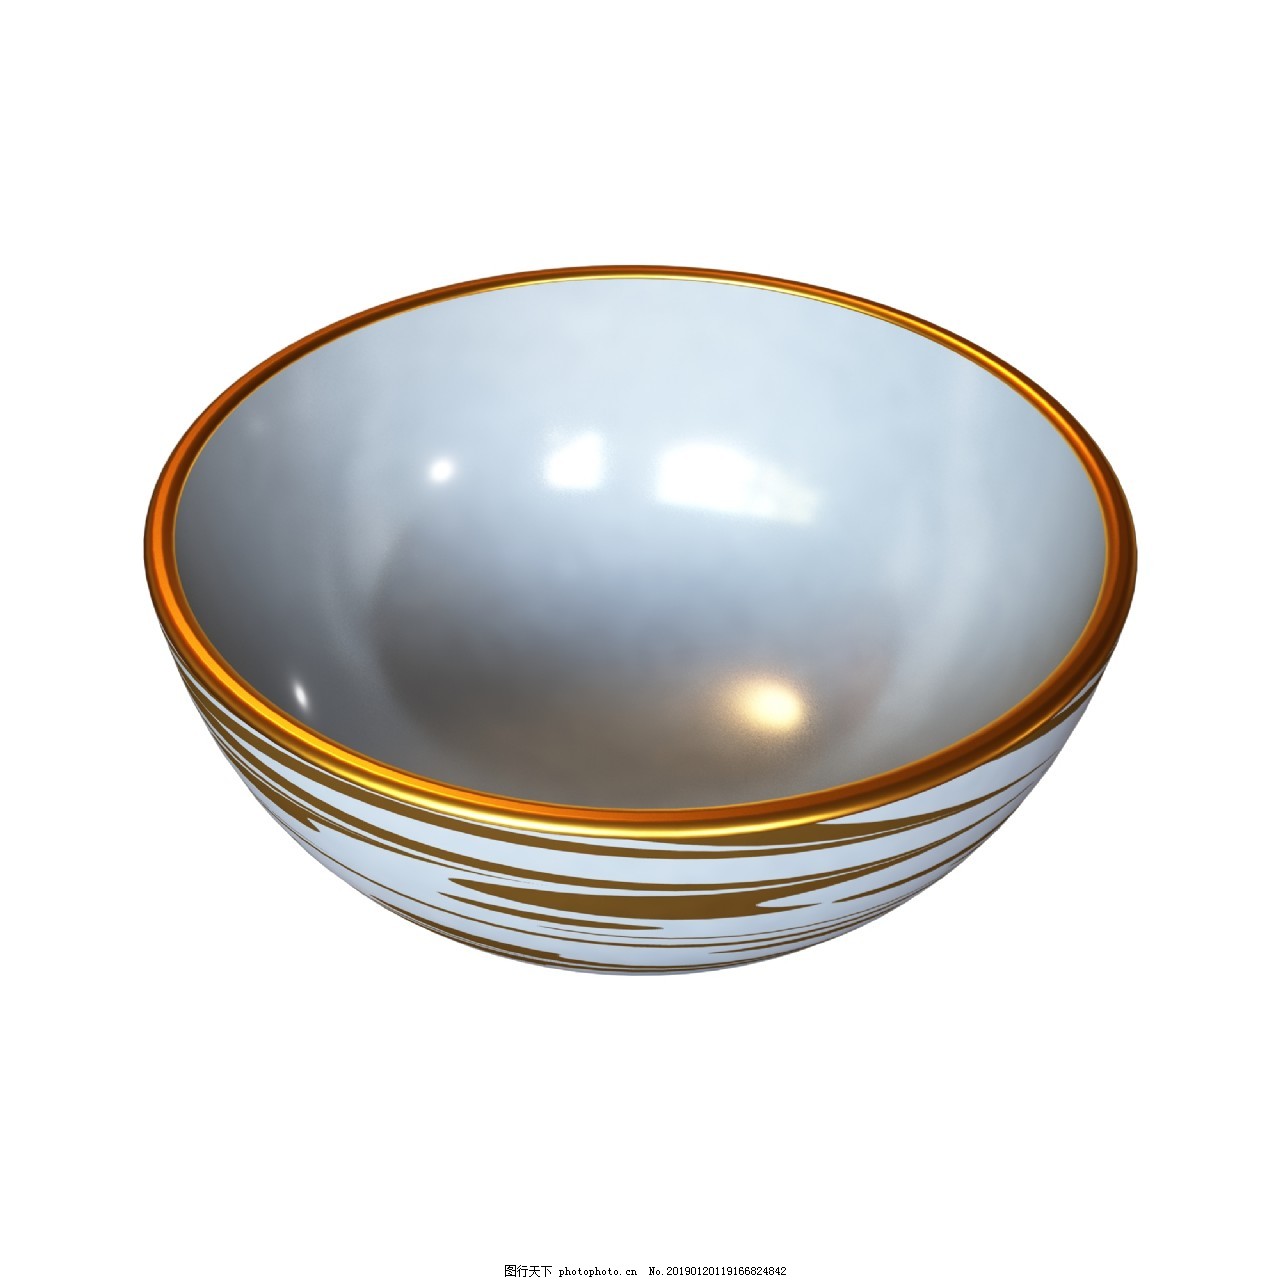 6/7寸手绘日韩简约大号创意家用泡面碗沙拉碗陶瓷汤碗可定制logo-阿里巴巴